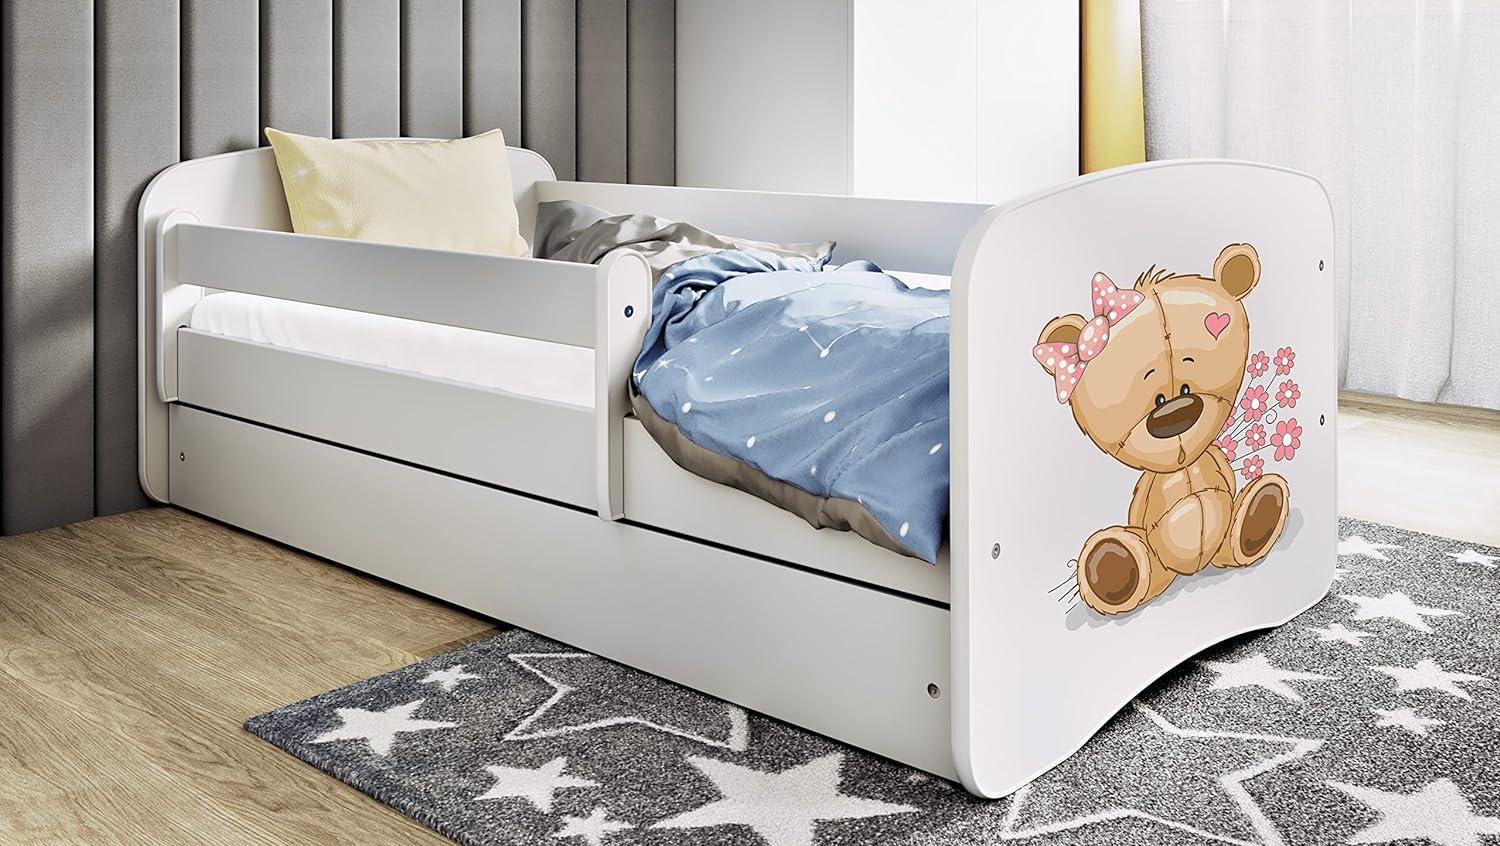 Kocot Kids 'Teddybär mit Blumen' Einzelbett weiß 80x160 cm inkl. Rausfallschutz, Matratze, Schublade und Lattenrost Bild 1